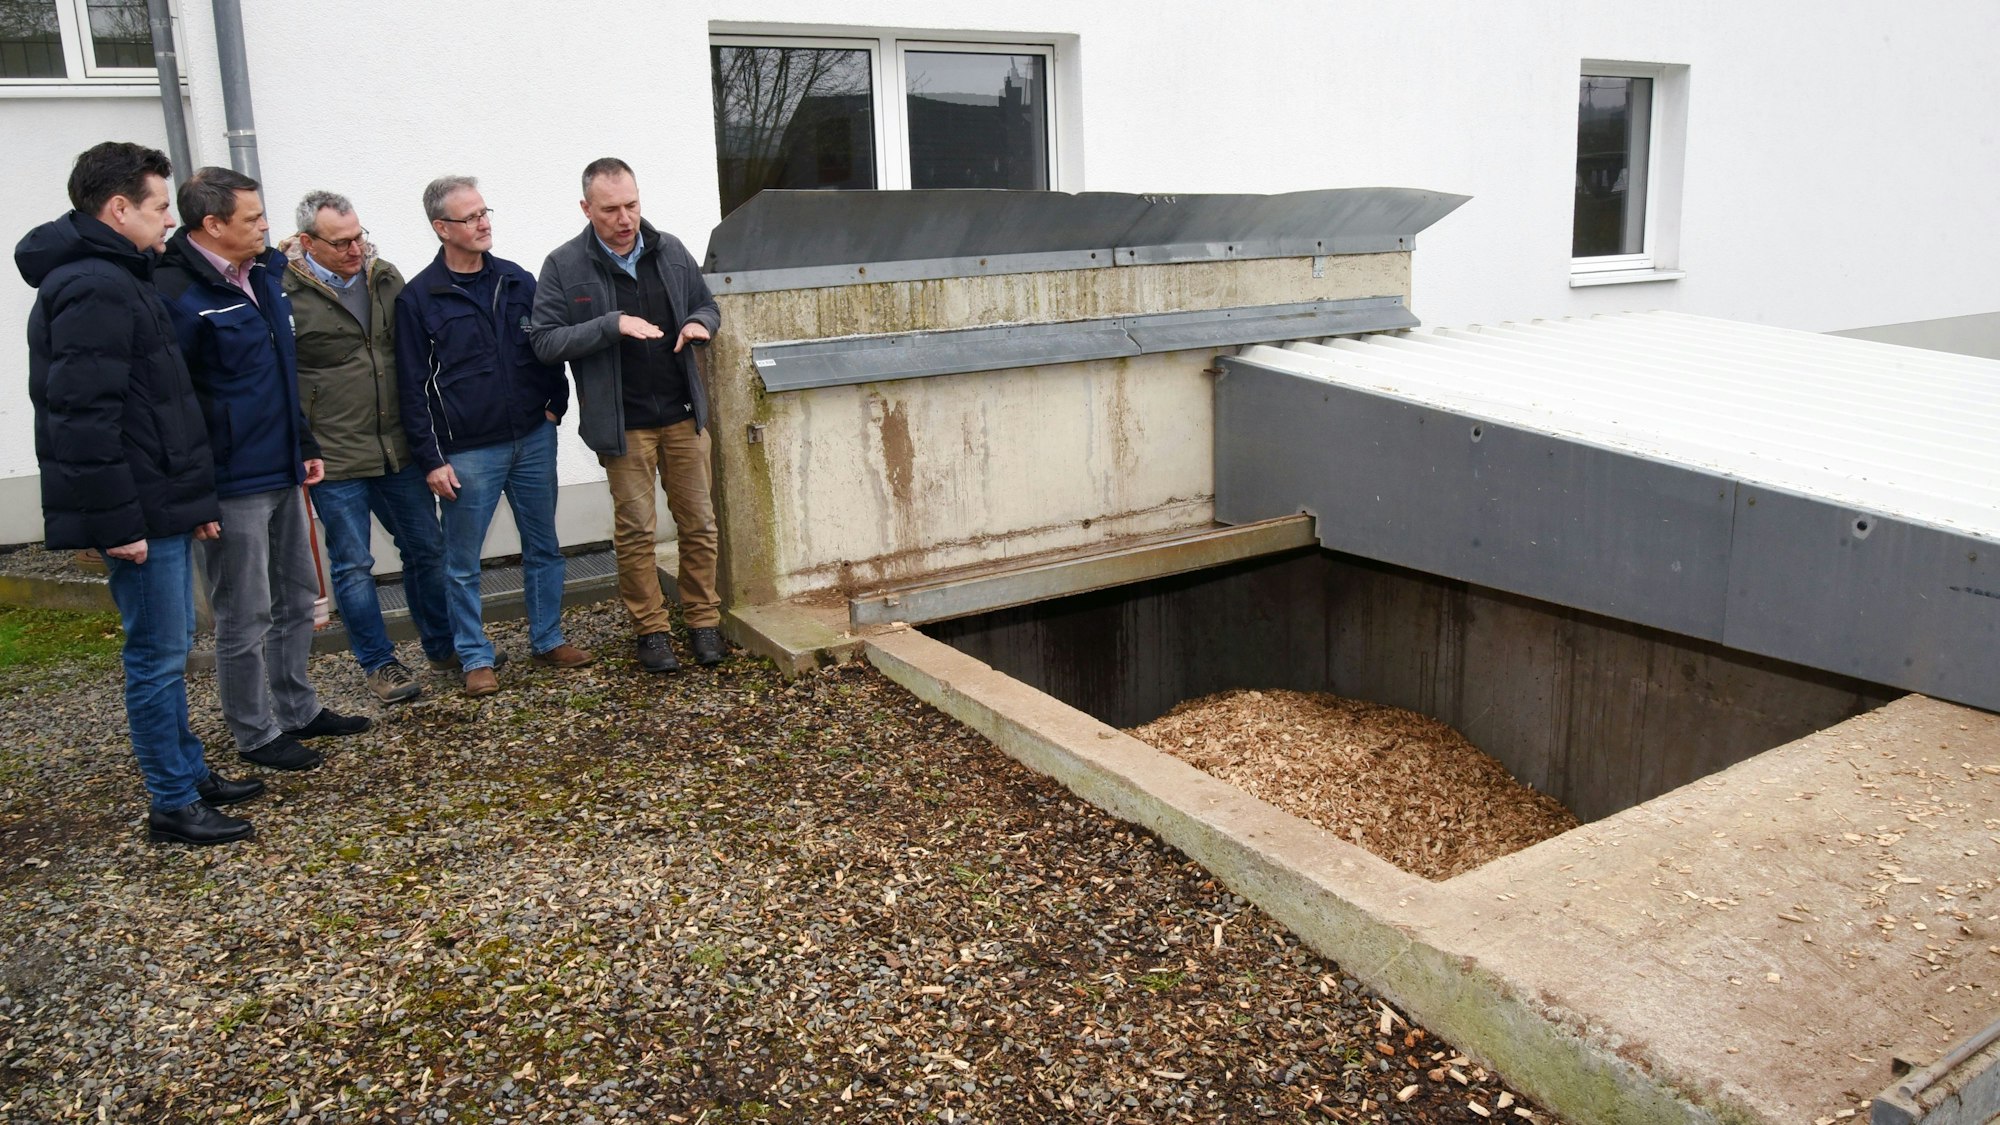 Fünf Männer stehen vor dem offenen Bunker einer Holzhackschnitzelheizung.